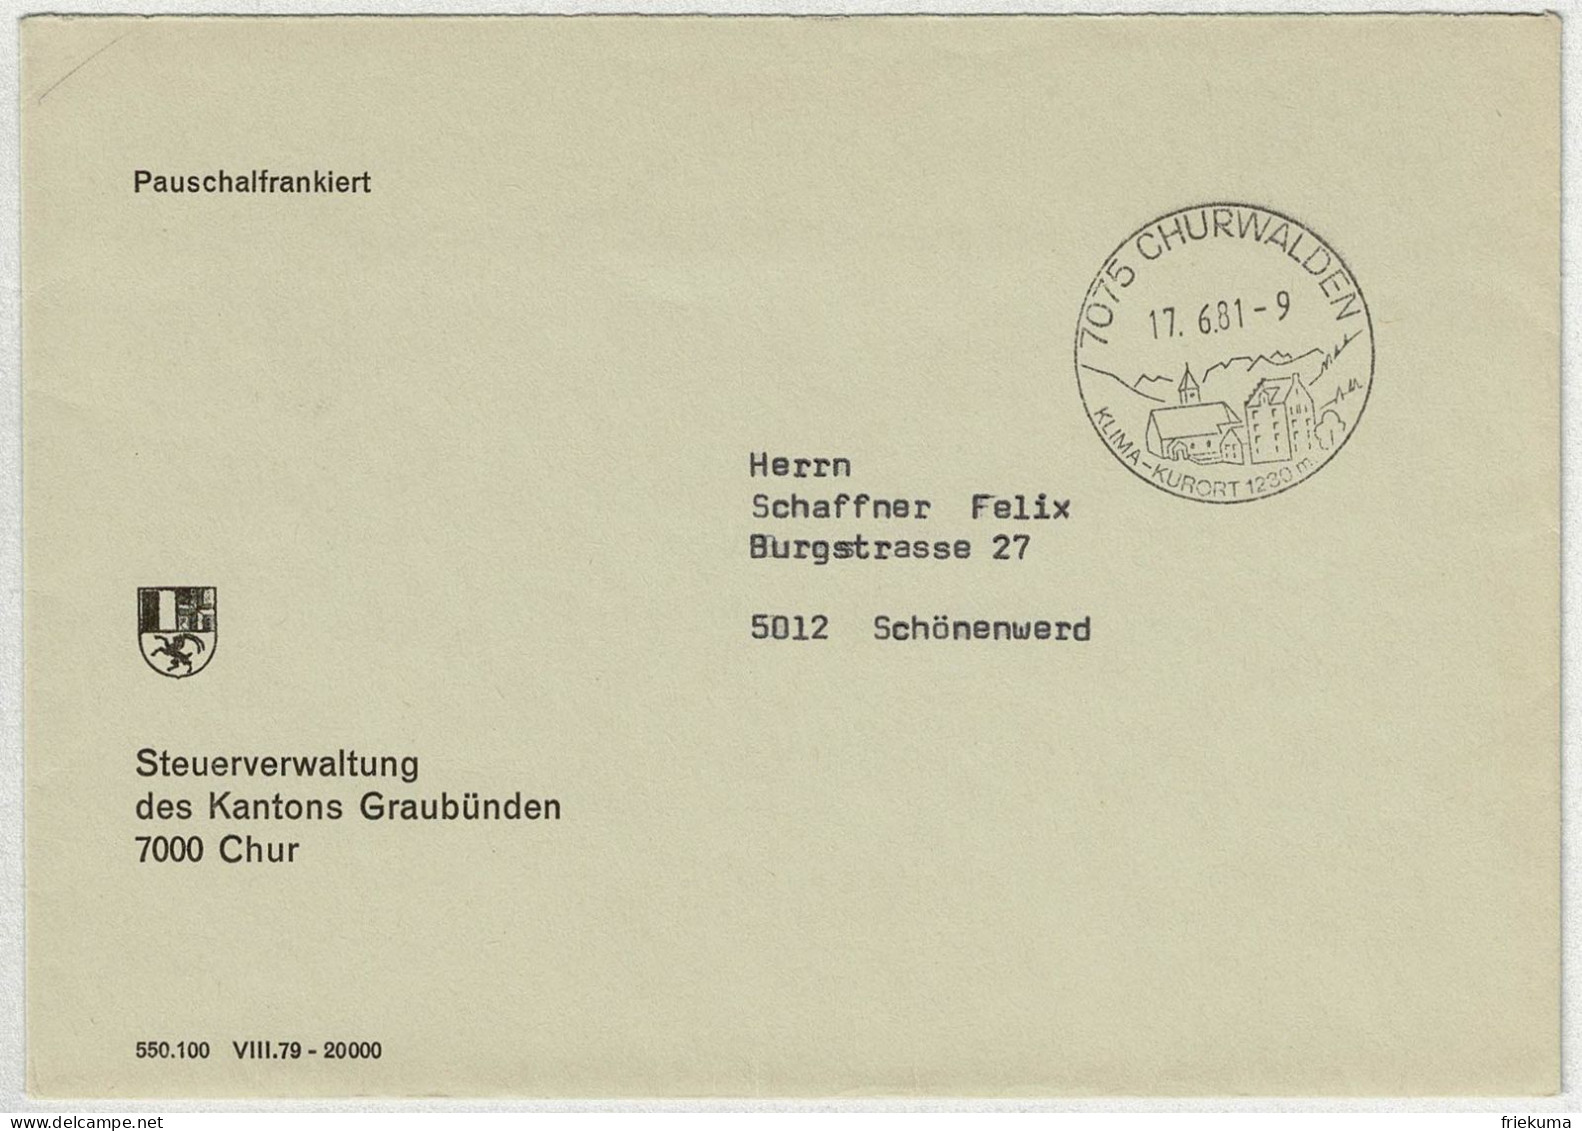 Schweiz 1981, Brief Pauschalfrankiert Churwalden - Schönenwerd - Postmark Collection